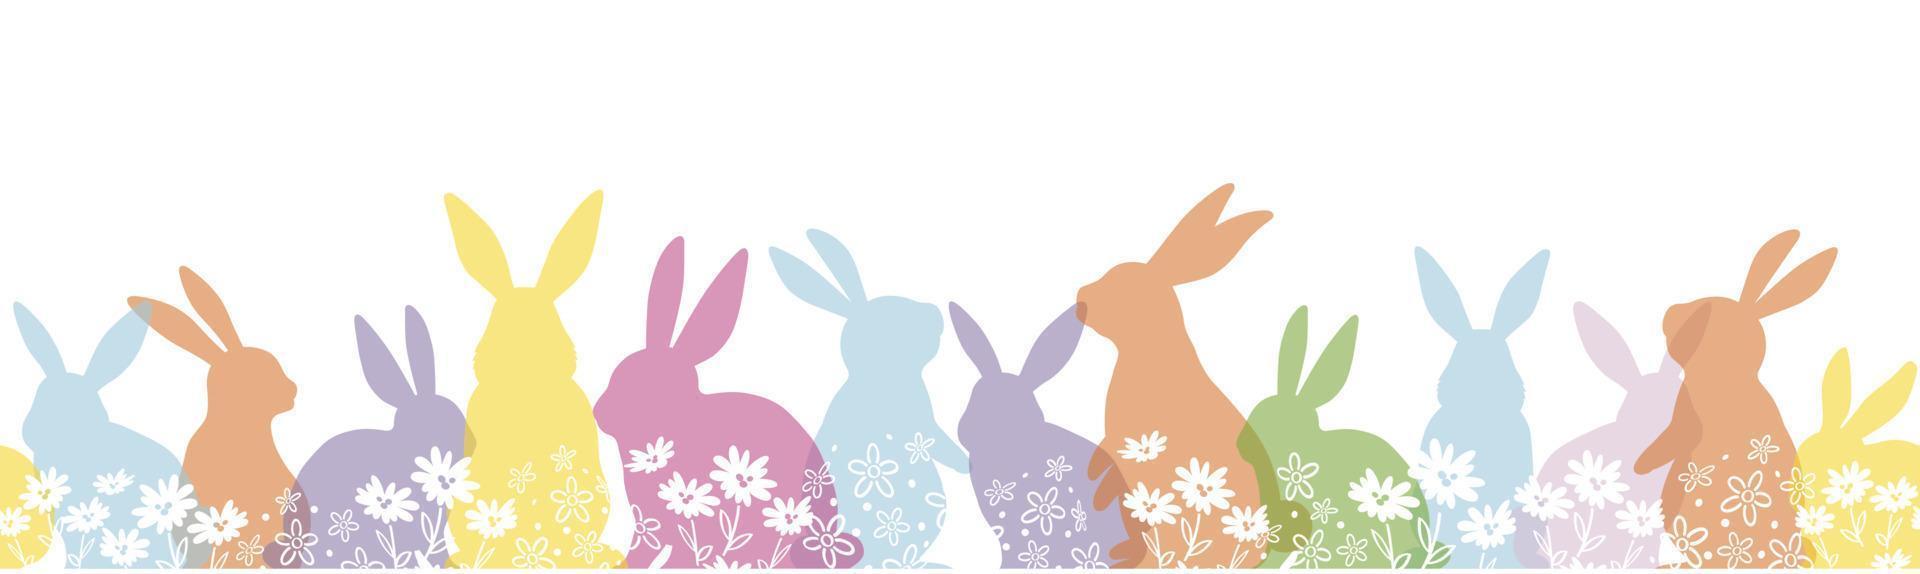 Lycklig påsk vektor sömlös bakgrund med färgrik påsk kanin silhuett isolerat på en vit bakgrund. vågrätt repeterbar.